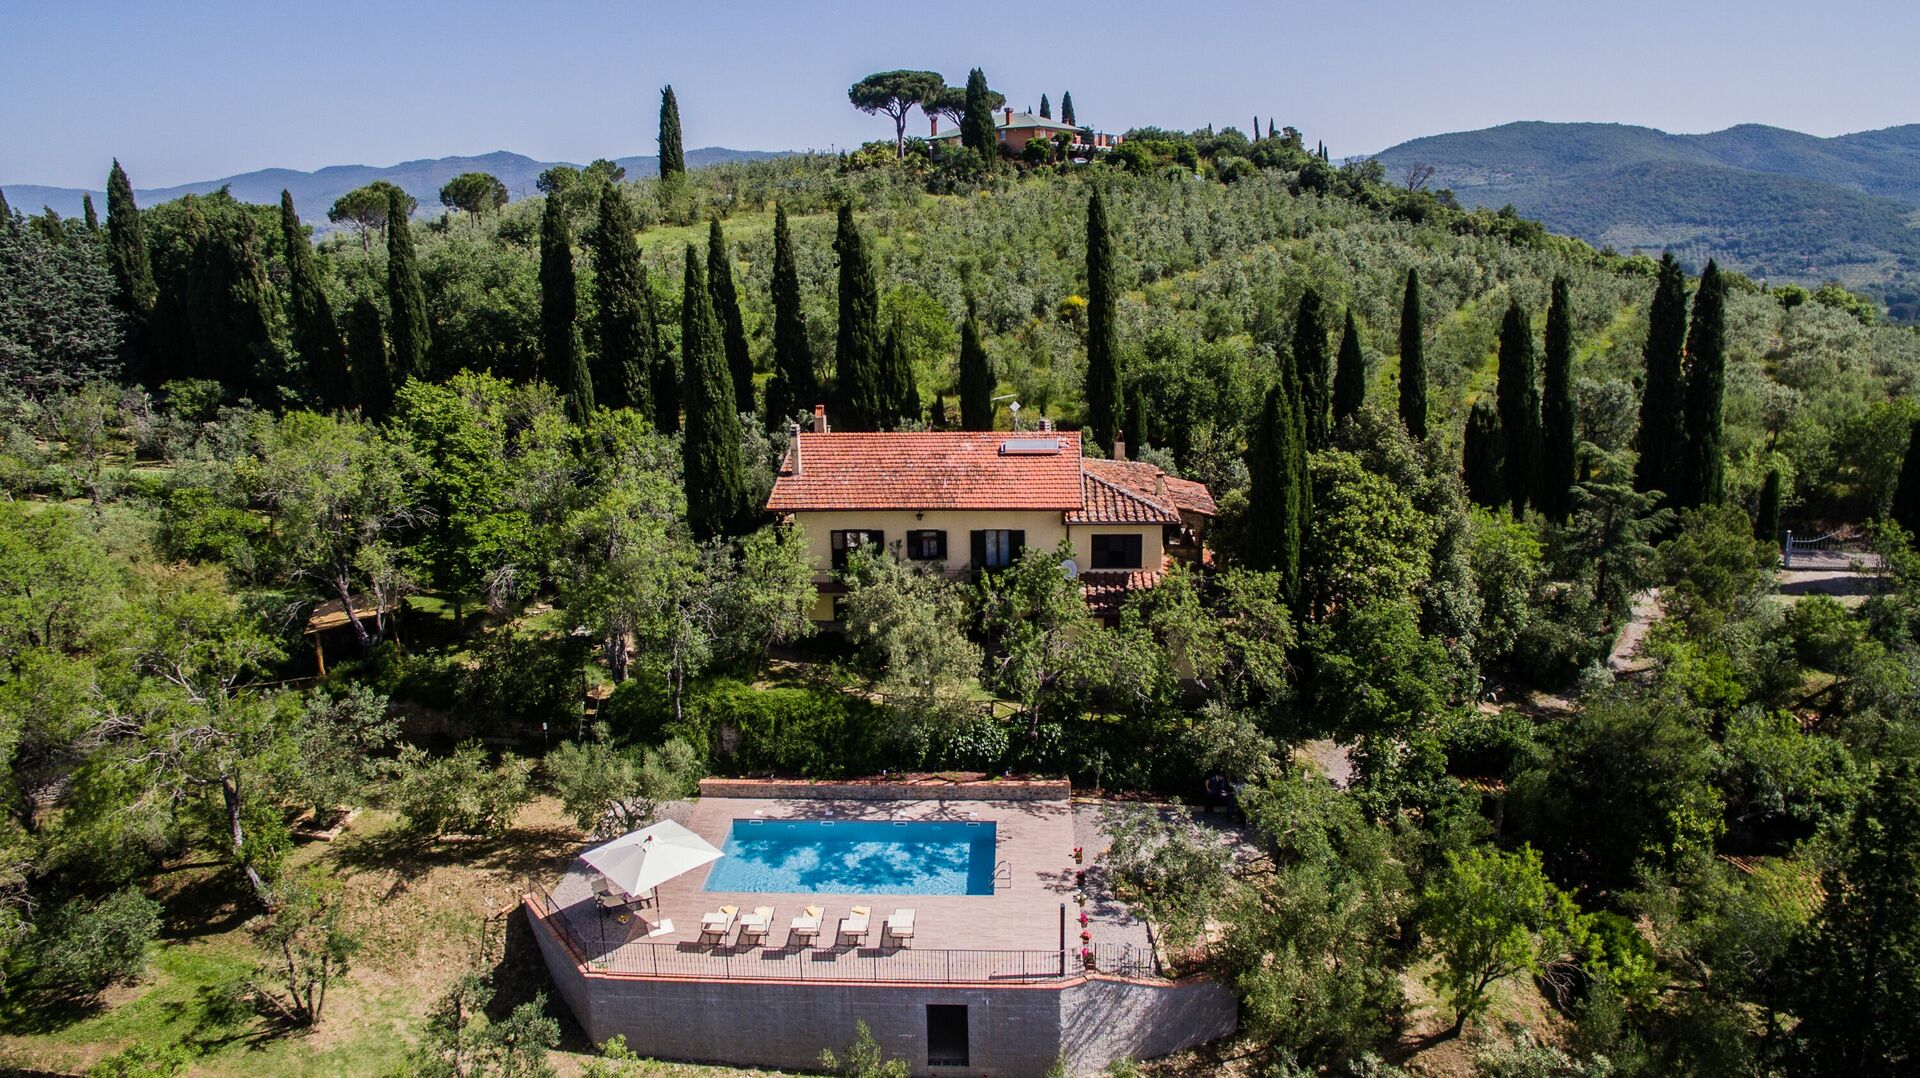 Ferienhaus in der Toskana mit Pool, Terrasse, Sonnenschirm und Liegestühlen mit Blick auf die Weinberge